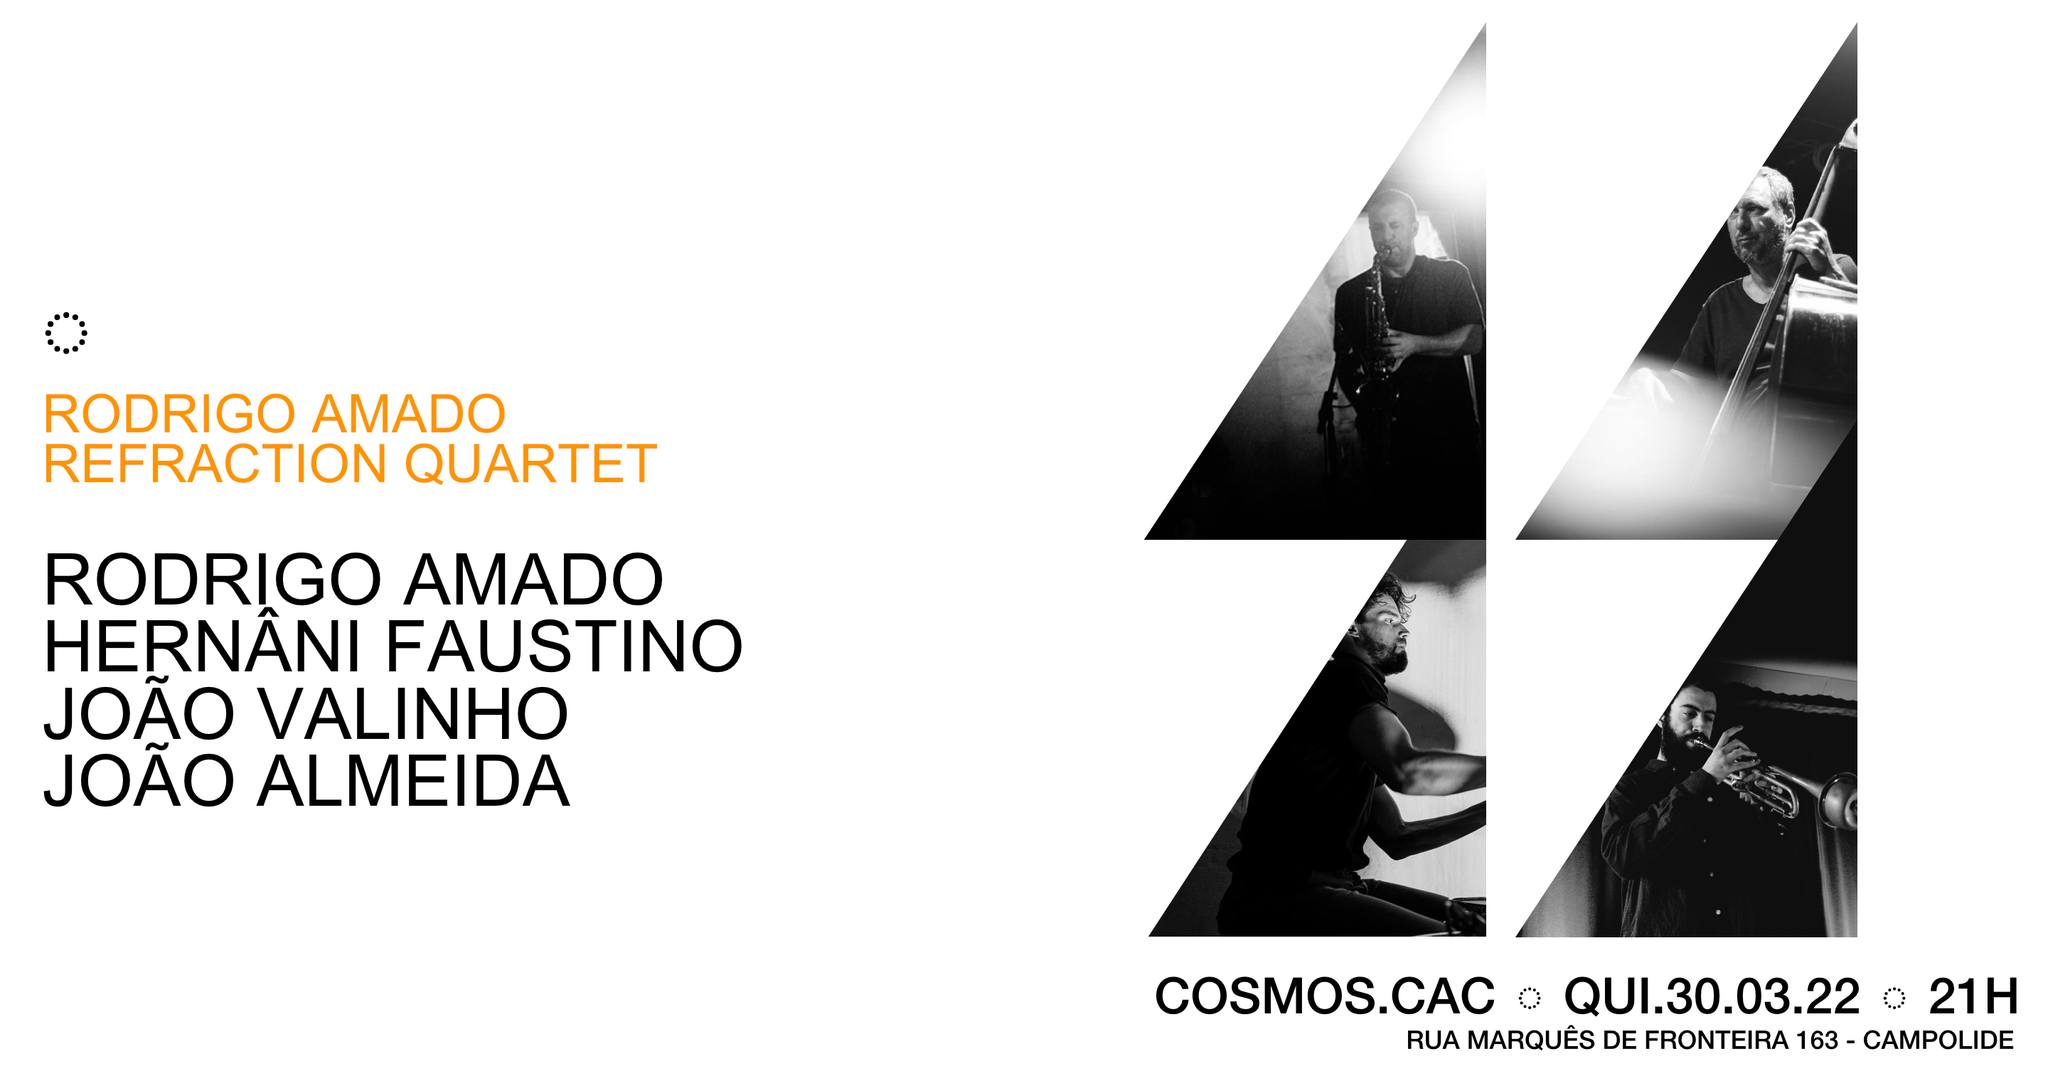 Rodrigo Amado Refraction Quartet ◌ Cosmos